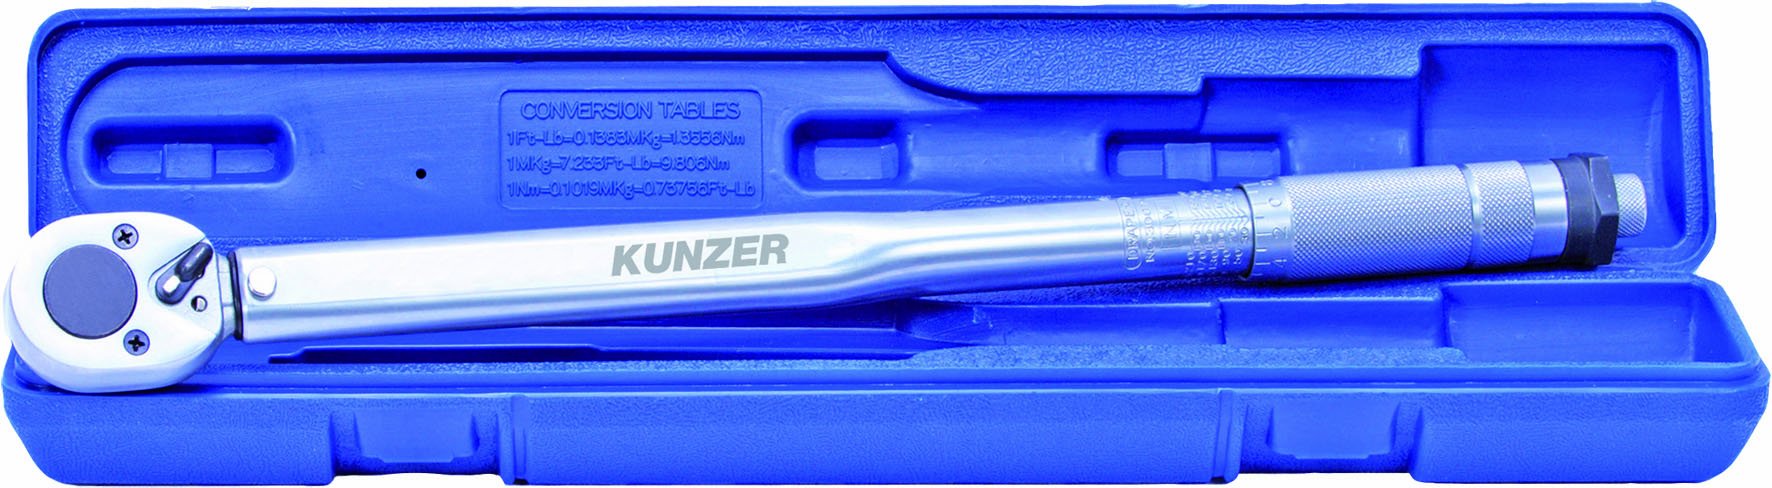 KUNZER 7DMS01 Drehmomentschlüssel Standard - 1/2" Knarrenkopf - Umschaltbar - einstellbar von 28-210 Nm - Länge 460mm von Kunzer